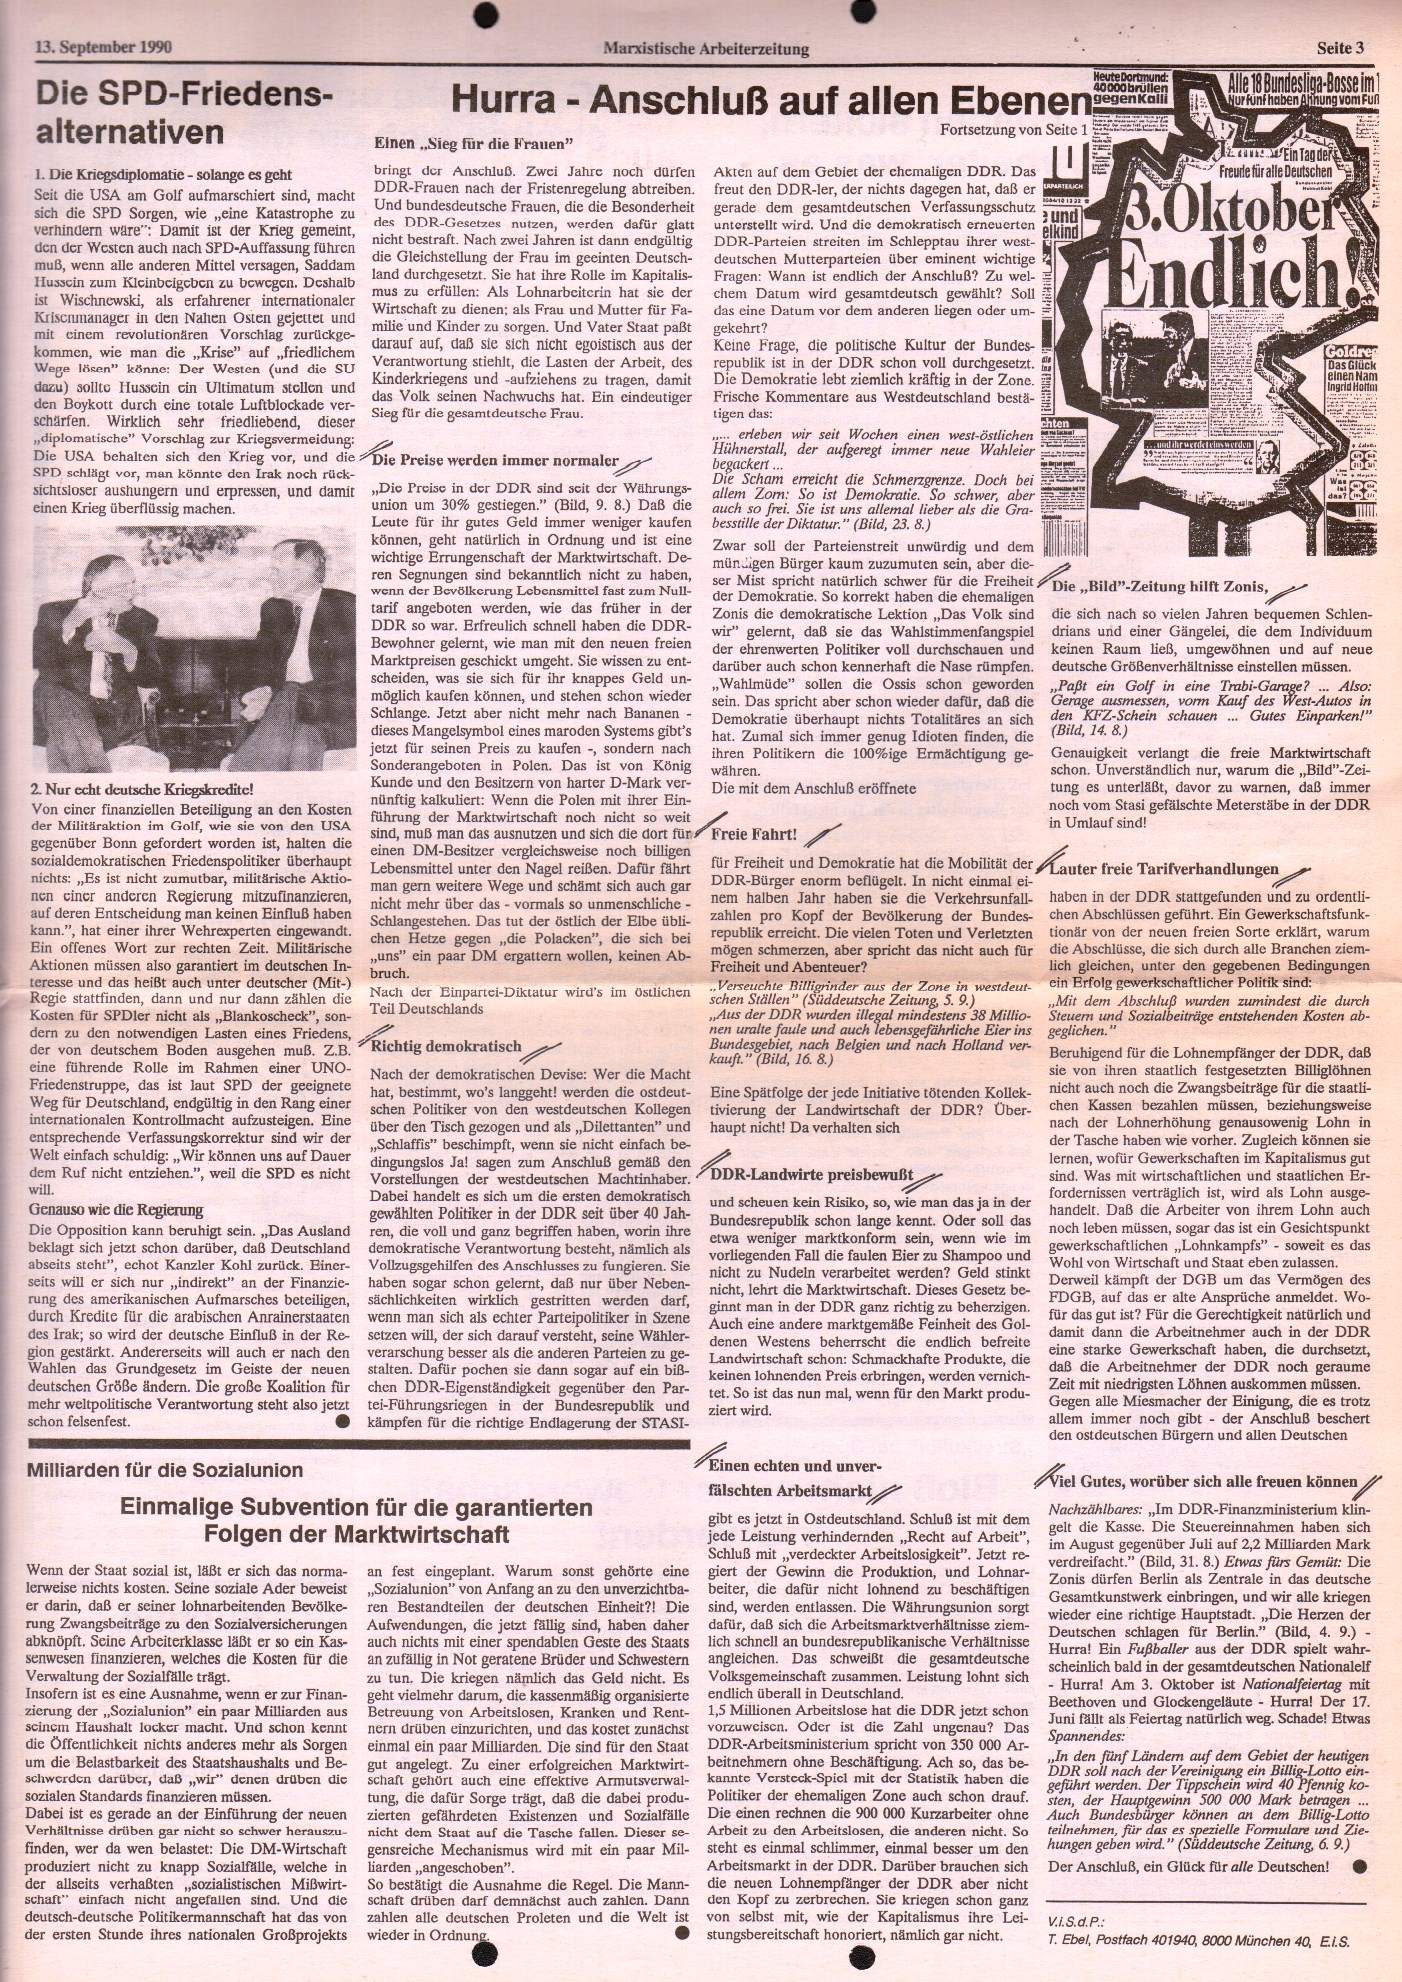 Ruhrgebiet_MG_Marxistische_Arbeiterzeitung_19900913_03